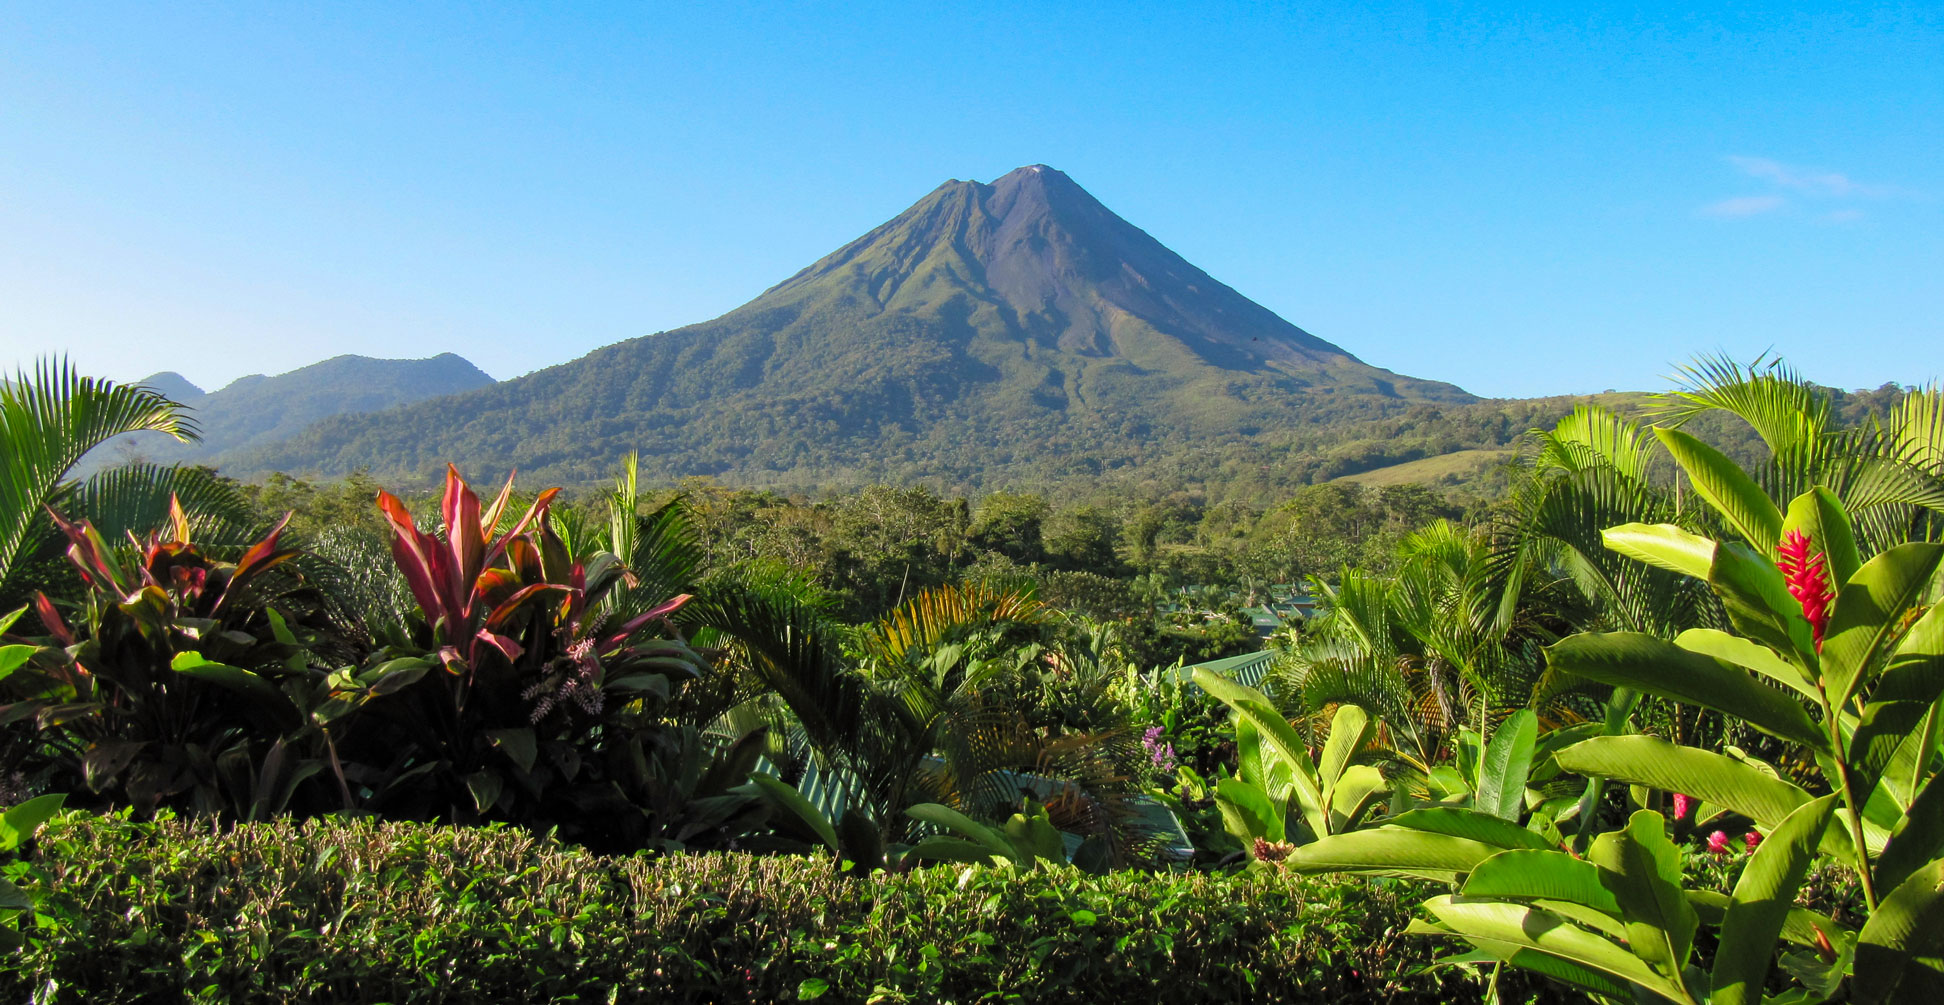 Arenal stratovolcano in Costa Rica